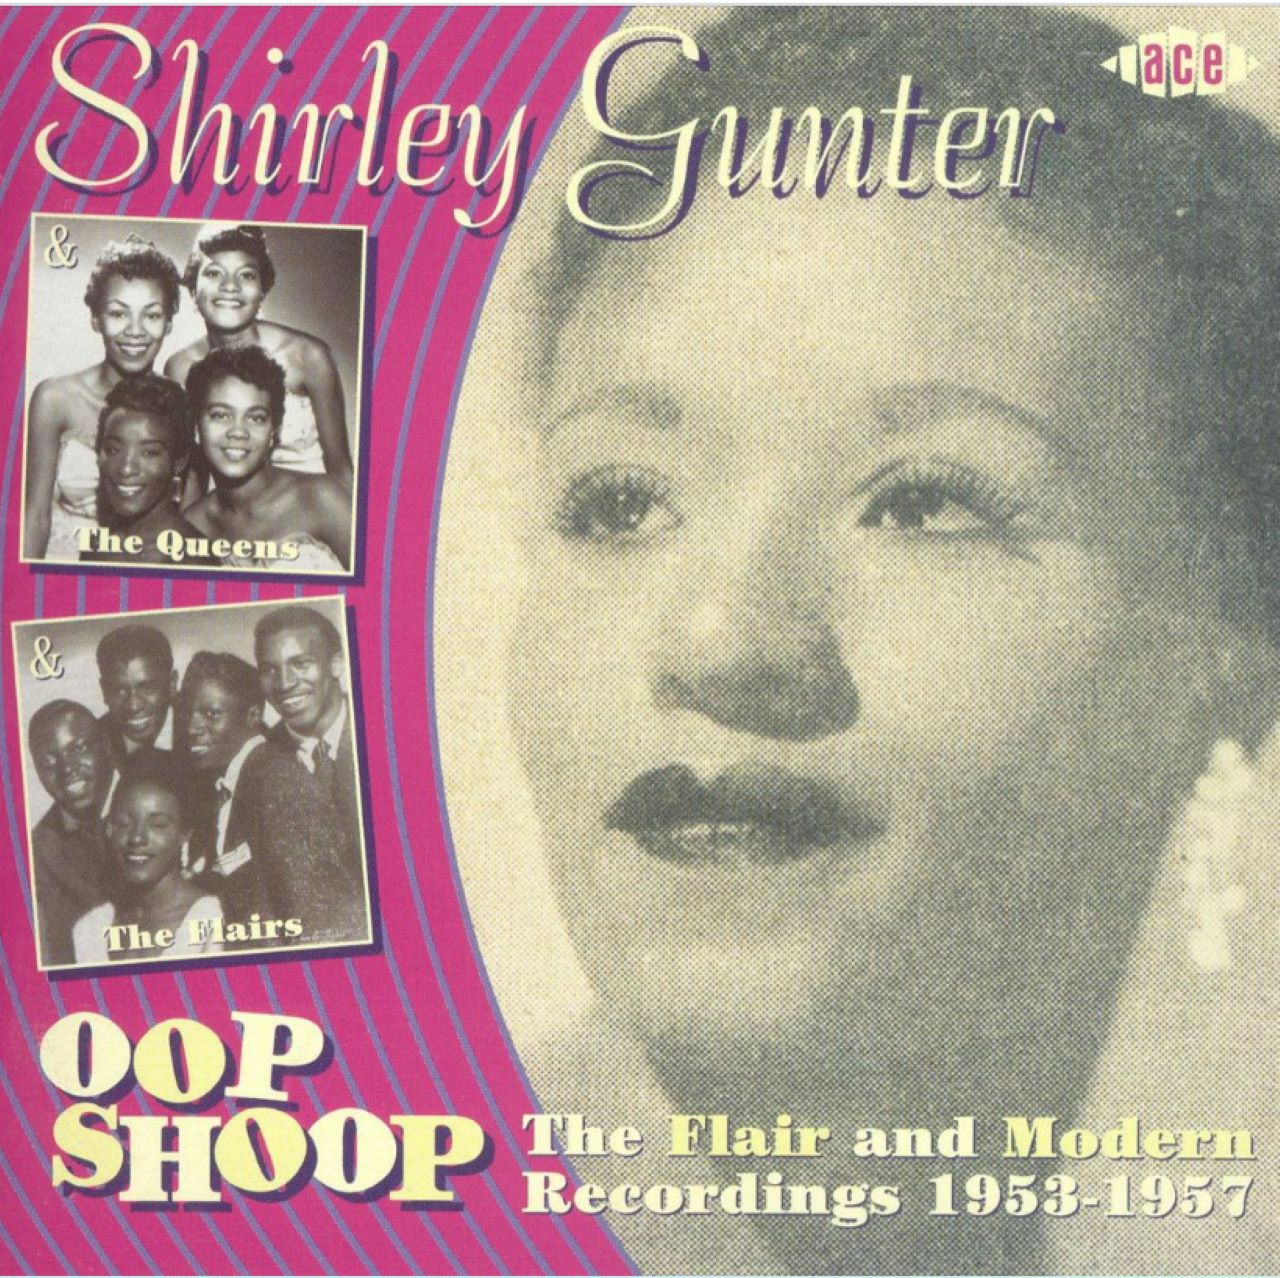 Shirley Gunter - Oop Shoop cover album